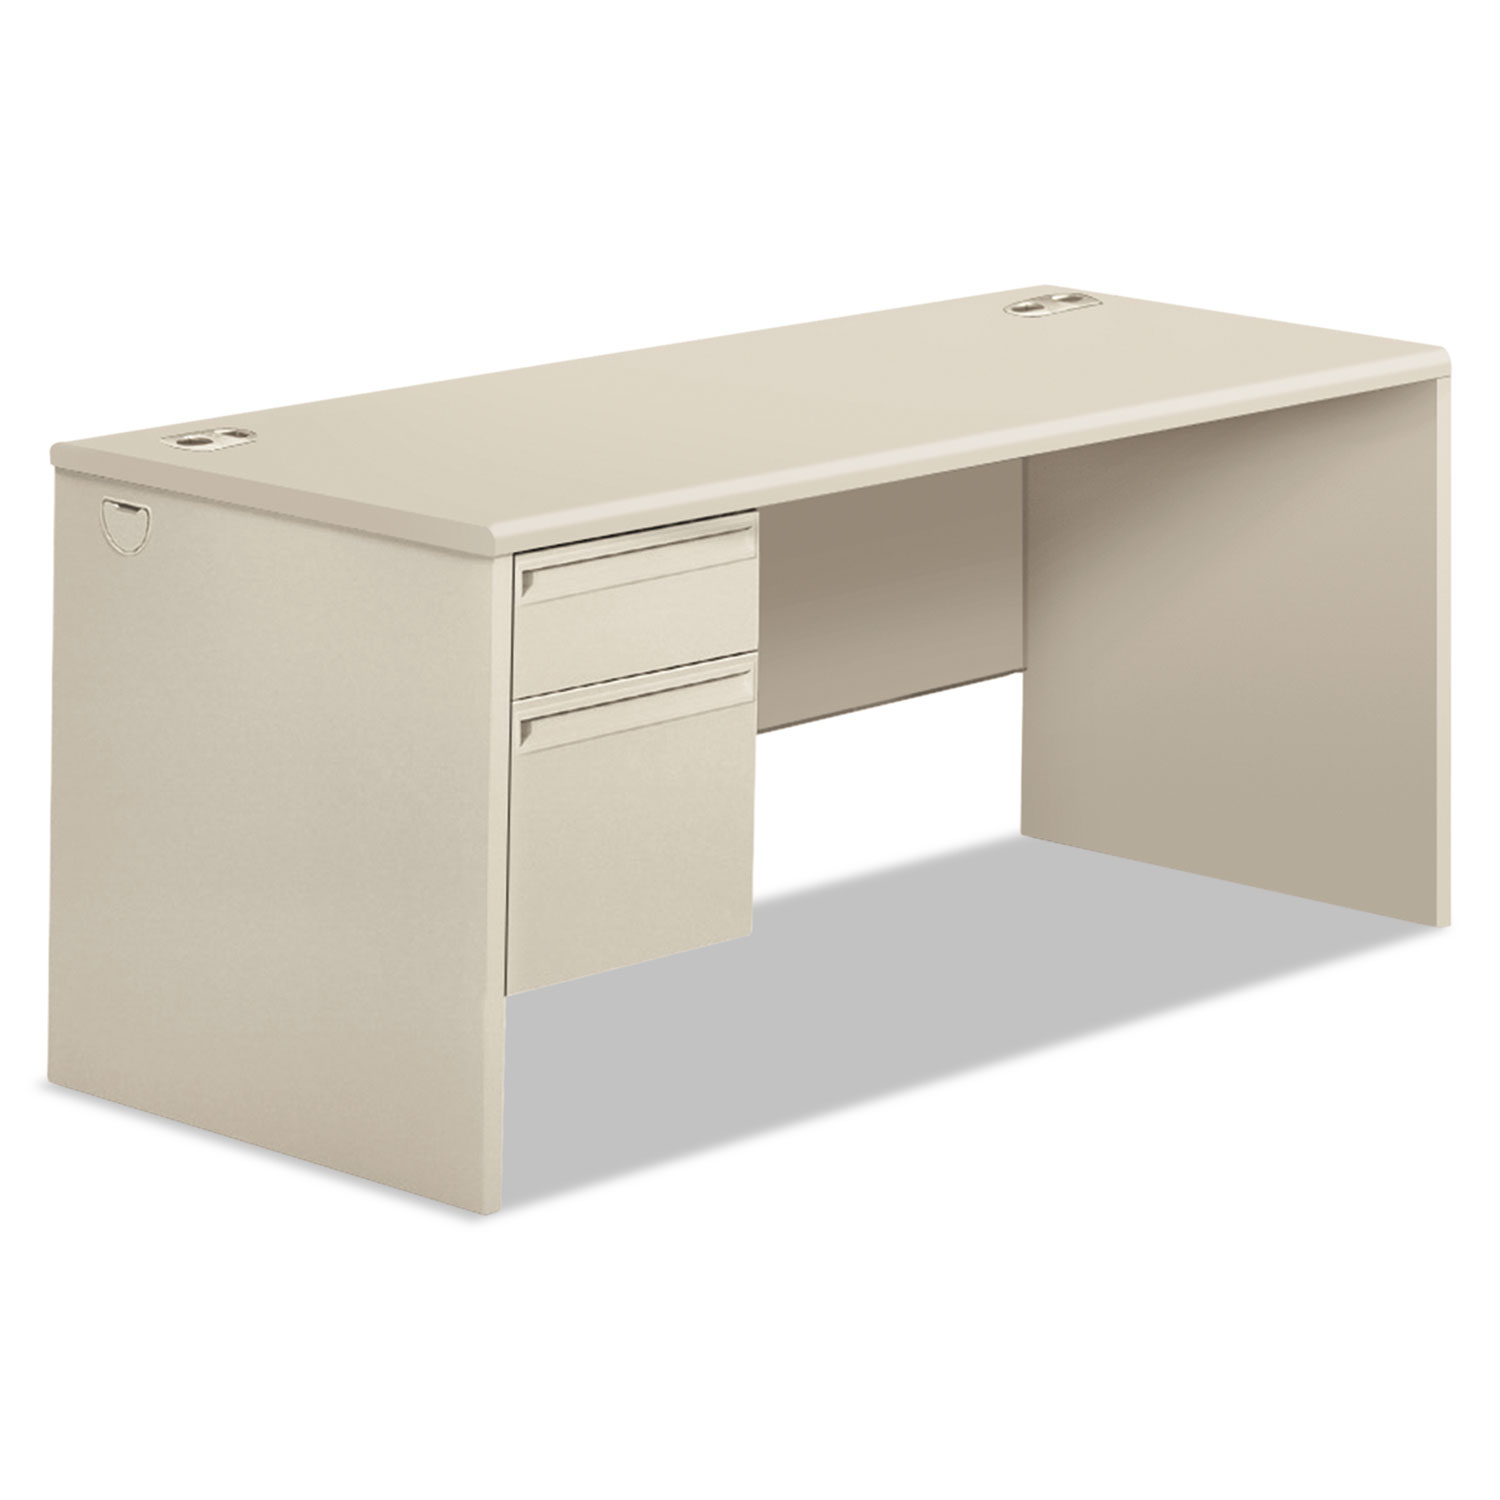 38000 Series Left Pedestal Desk, 66w x 30d x 29-1/2h, Light Gray